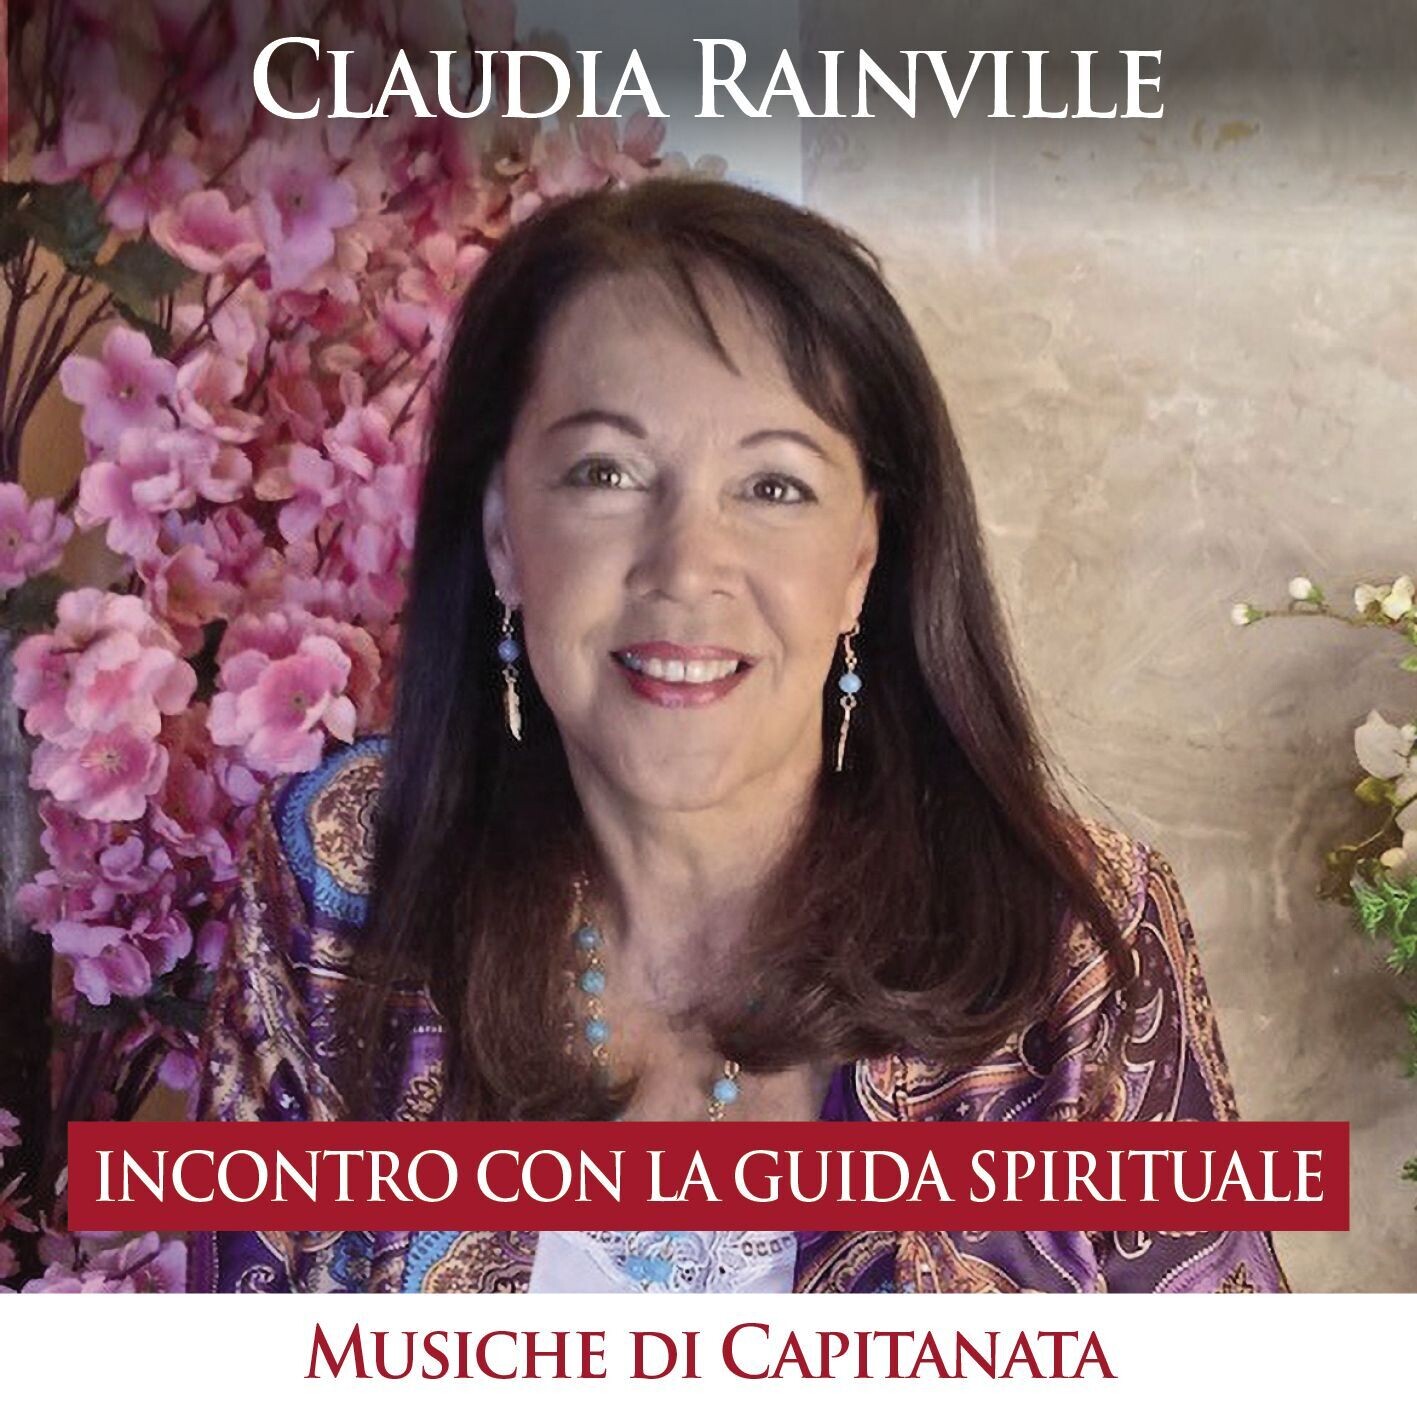 Incontro con la Guida Spirituale 
Claudia Rainville, Rino Capitanata